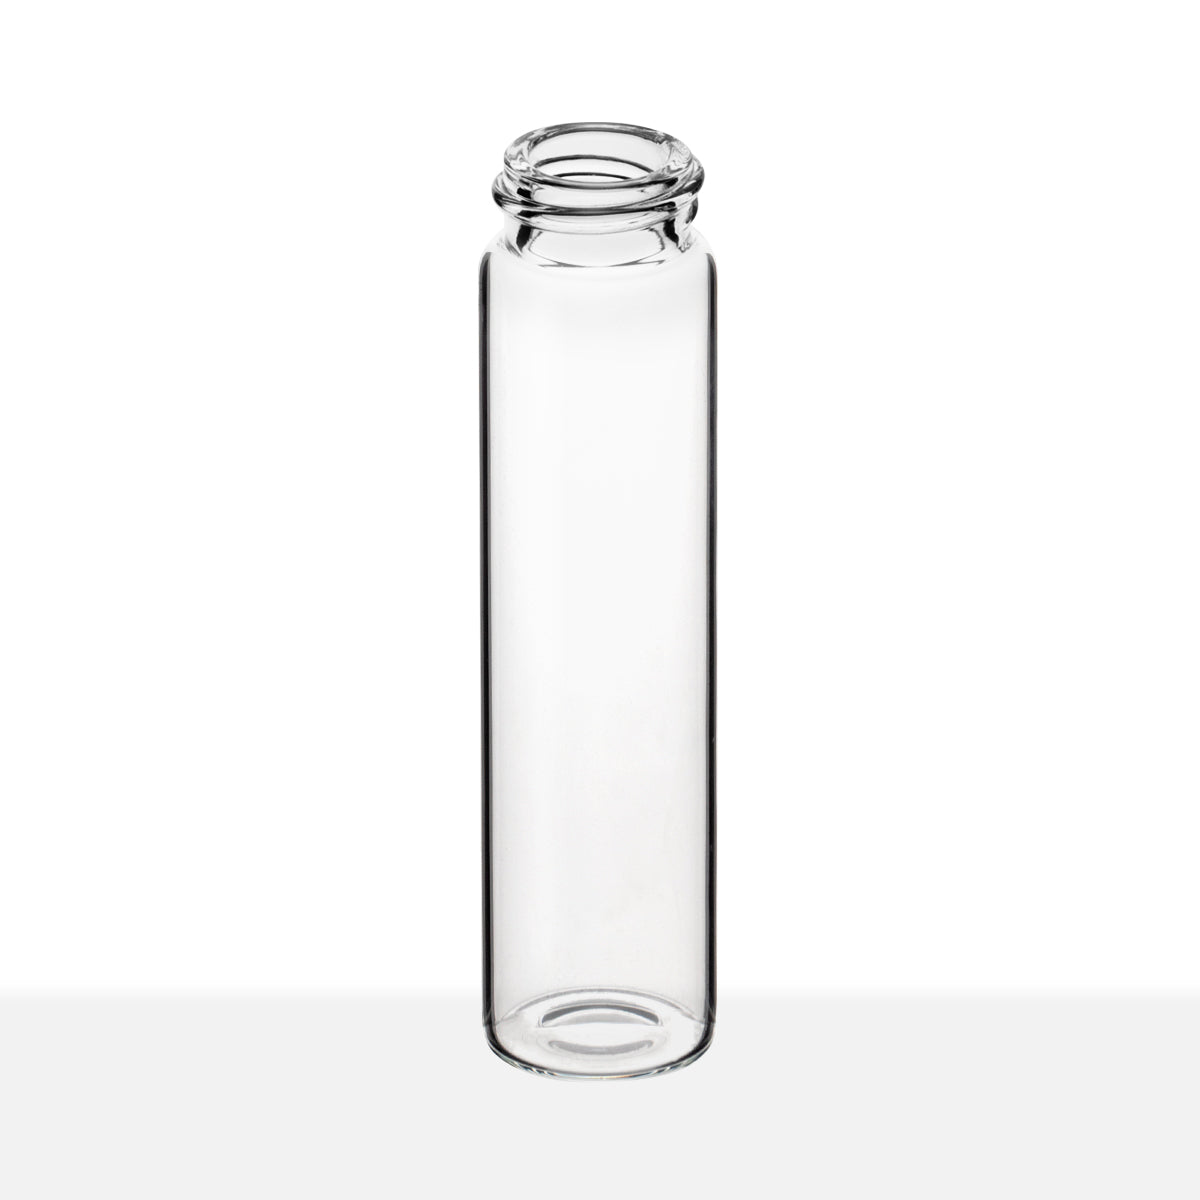 SCREW THREAD GLASS VIALS - CLEAR Item #:VC222595